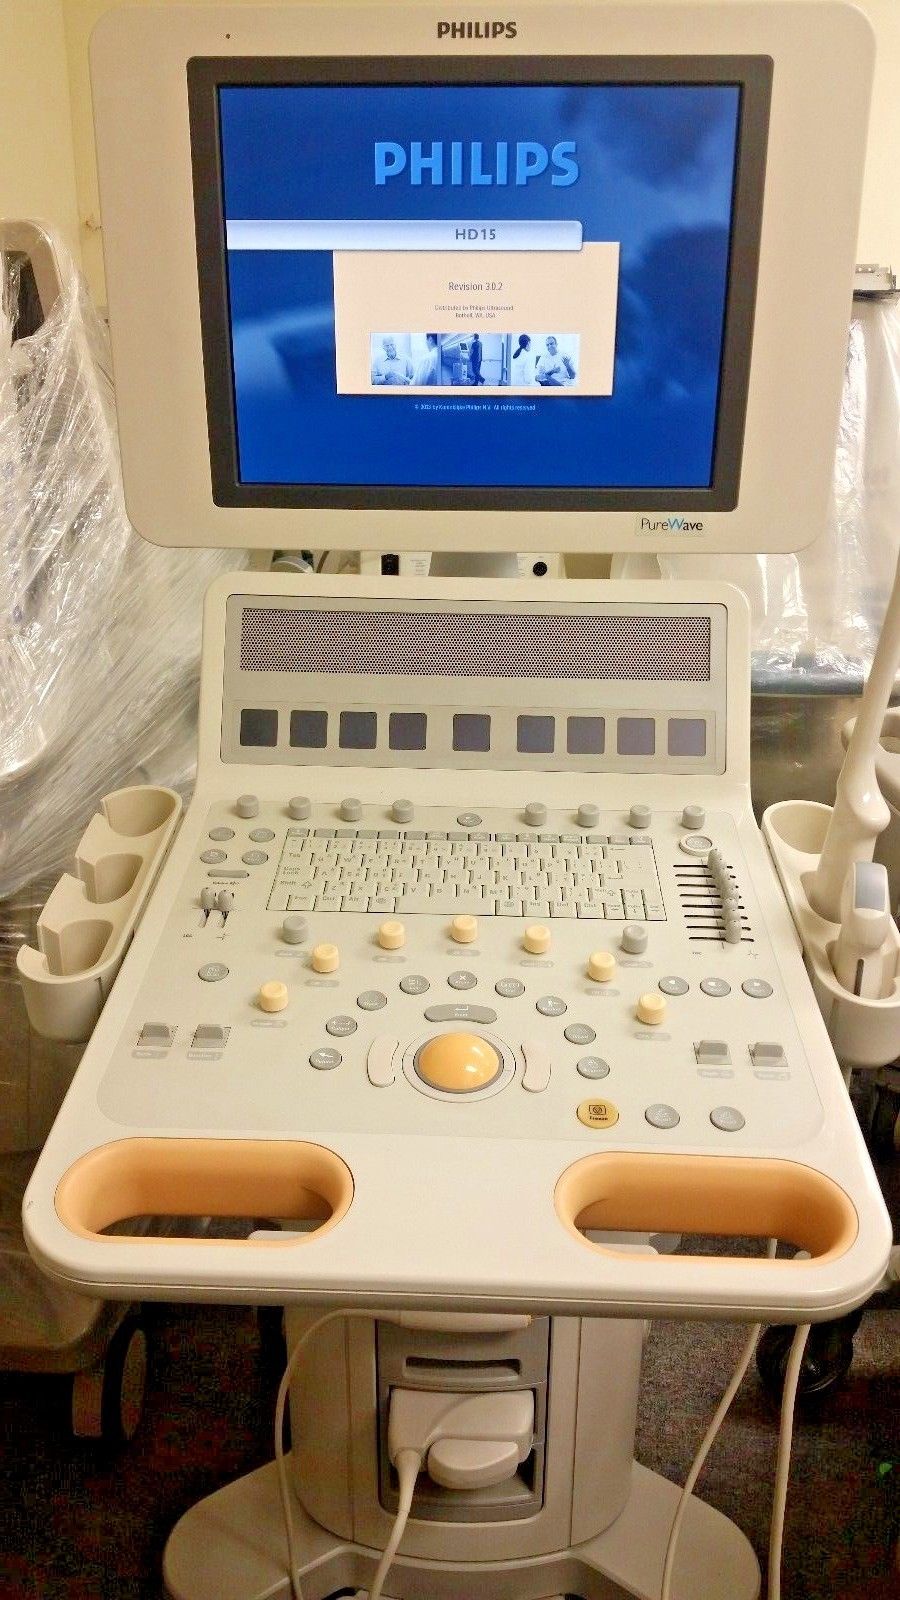 Philips HD15 Ultrasound Machine. Radiology OB/GYN C5-1 & C8-4V Transducers Inclu